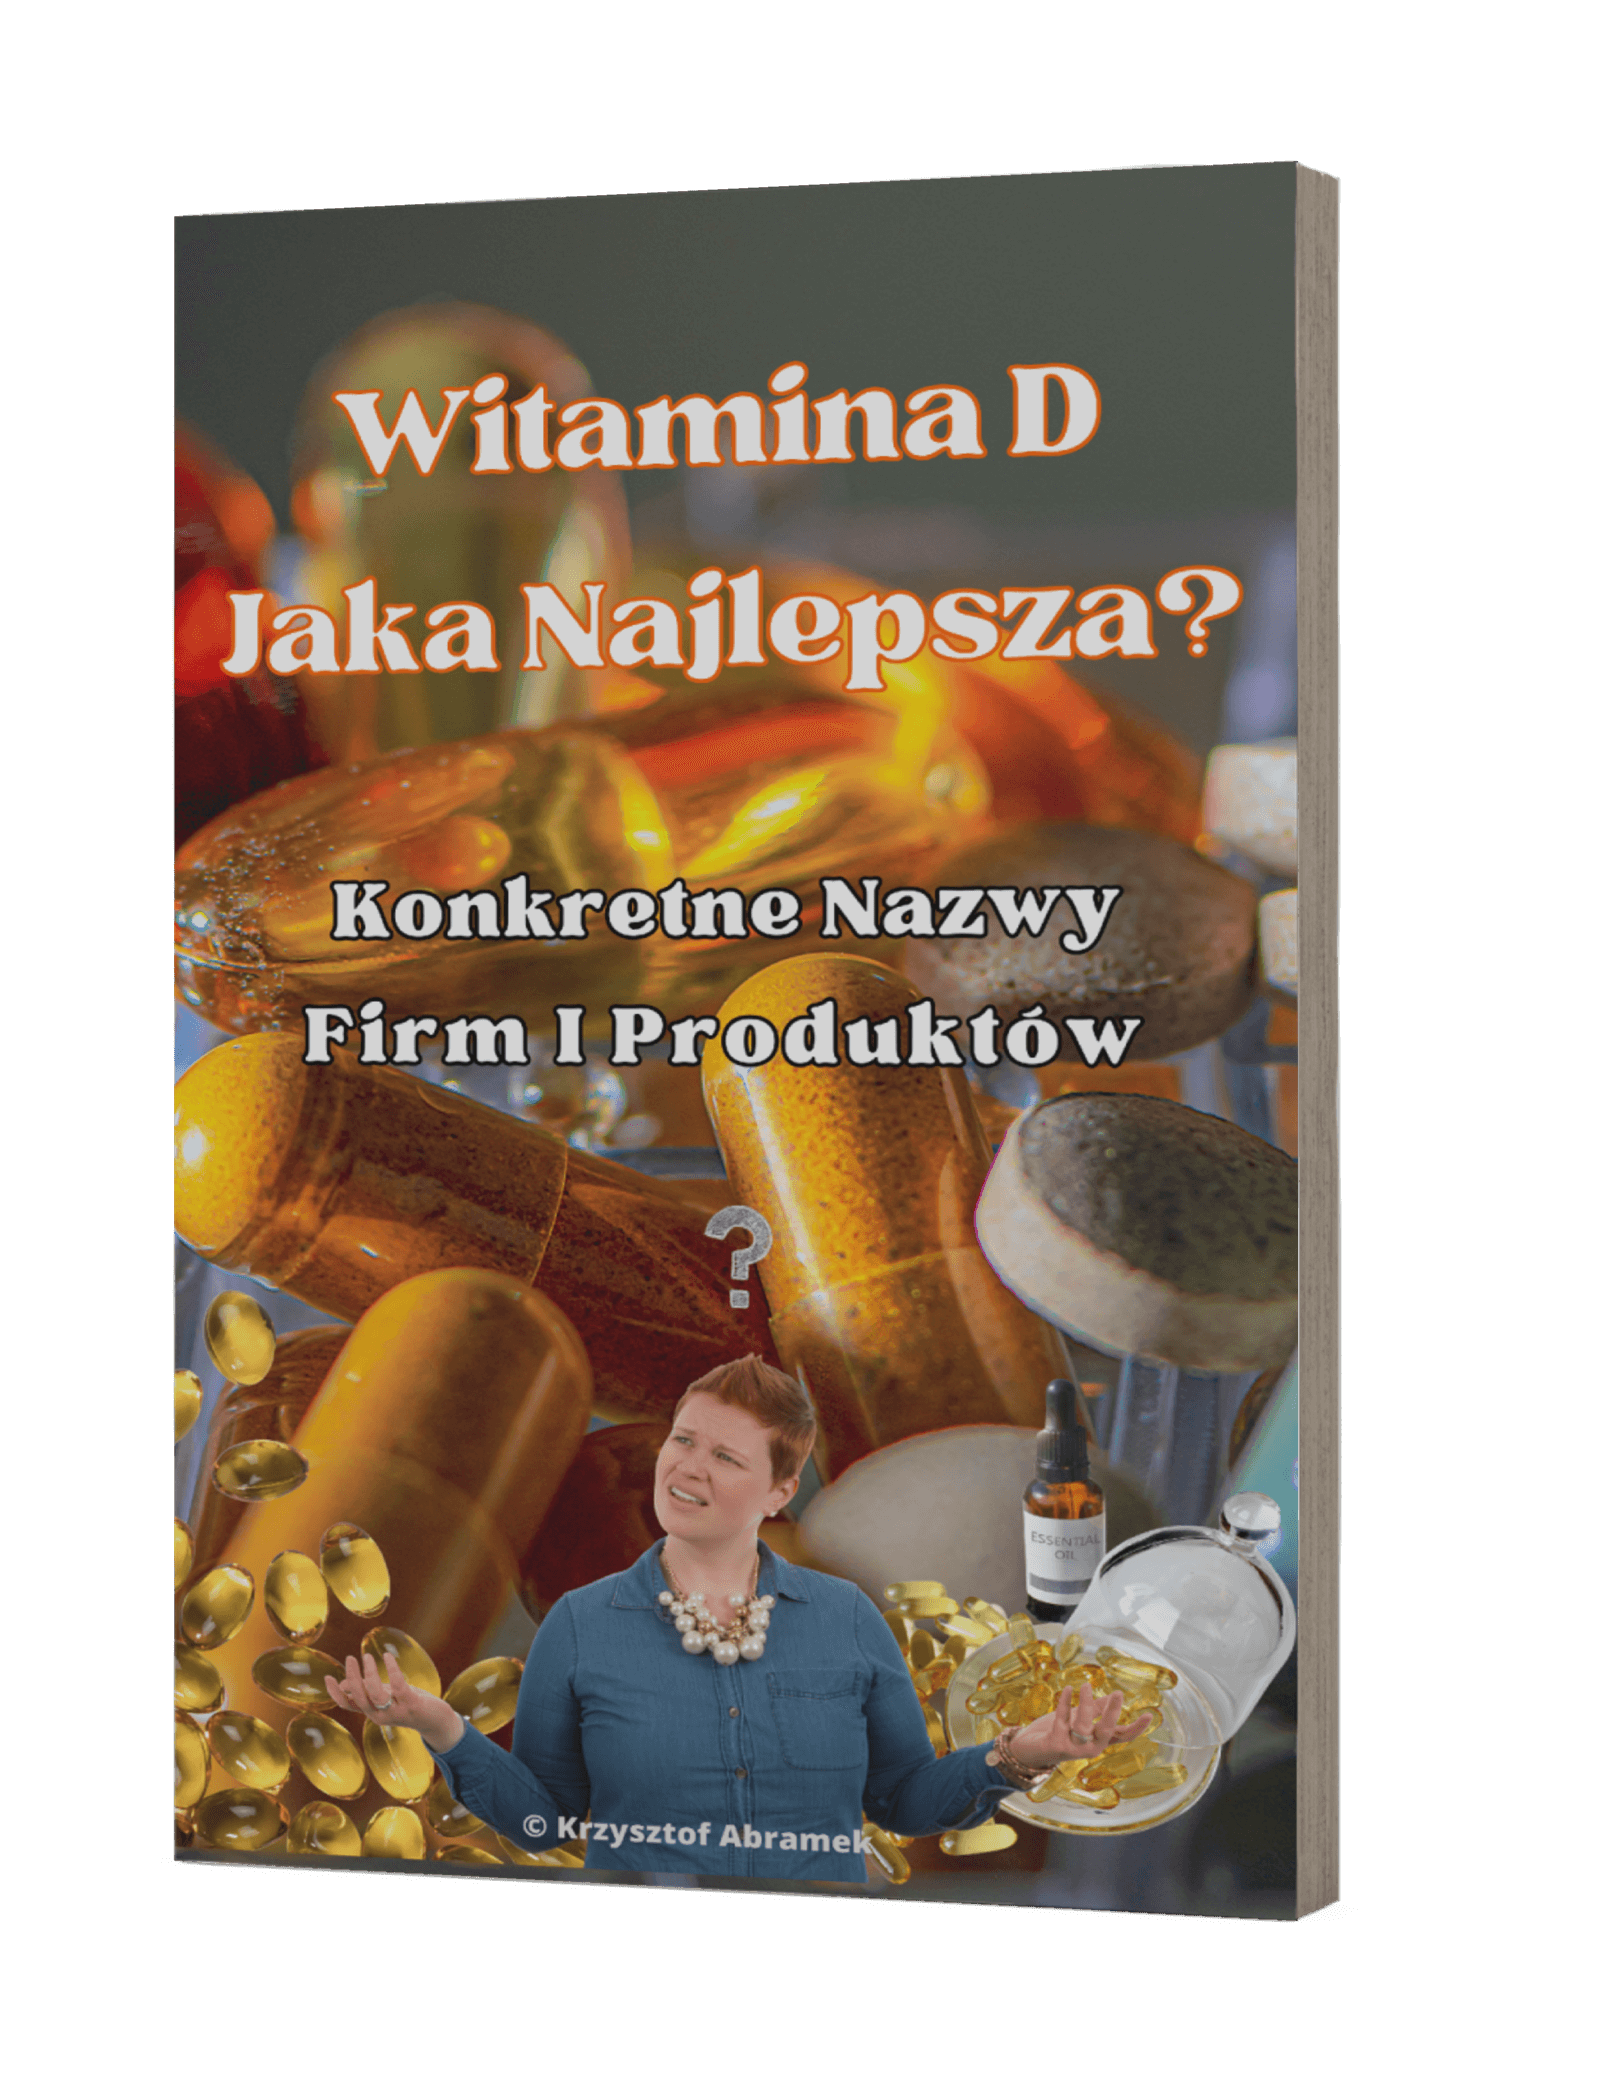 Witamina D Jaka Najlepsza - kurs o witaminie D3 wit d2 najlepsze-witaminy-d3